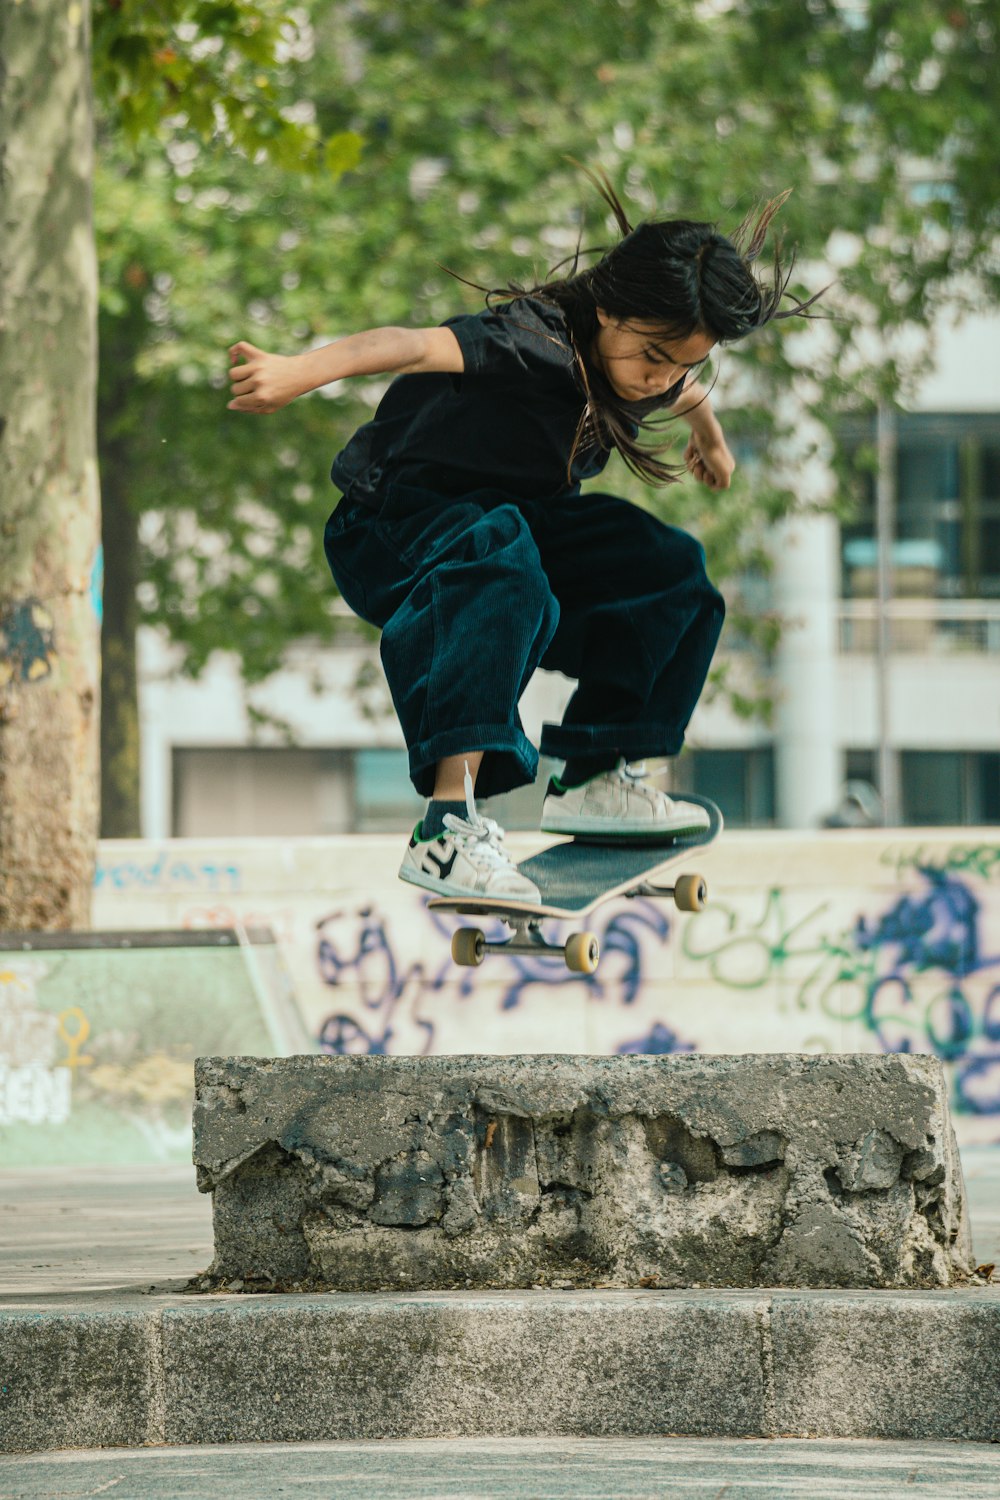 a man flying through the air while riding a skateboard